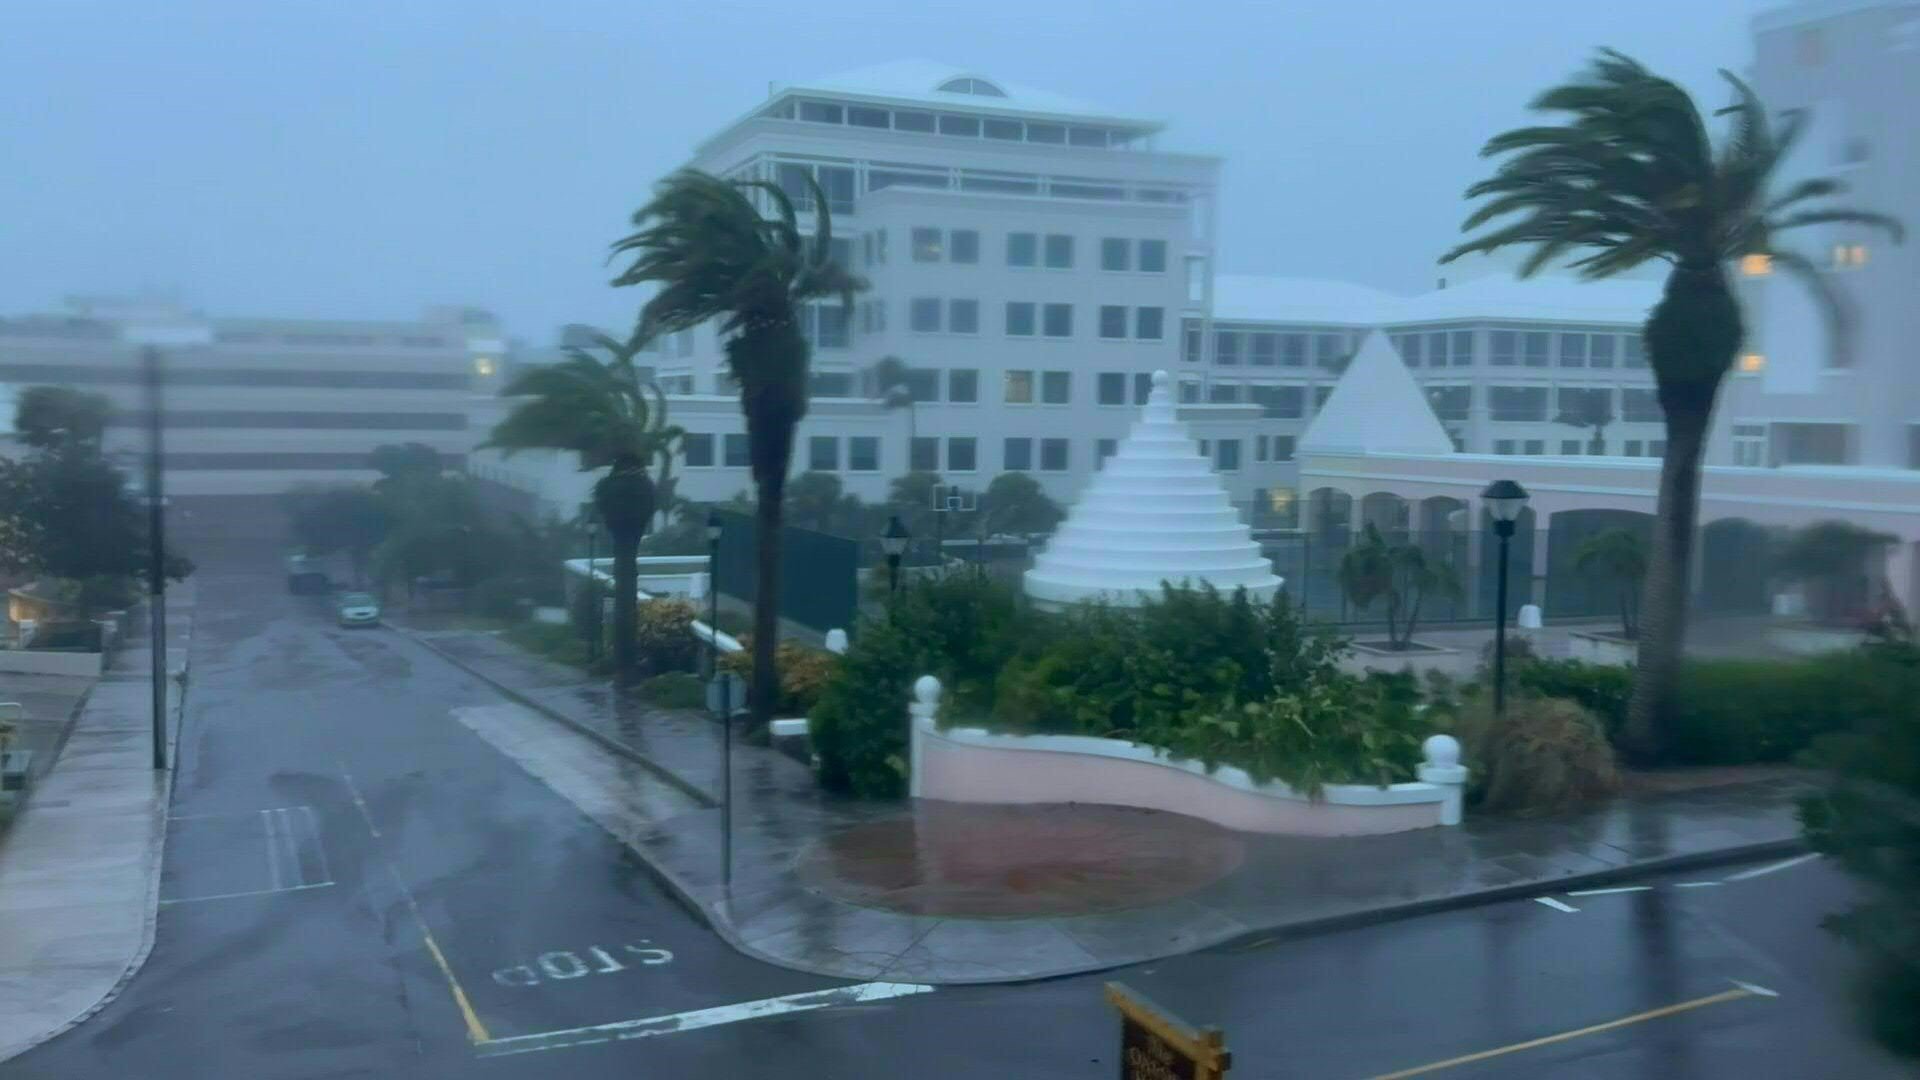 Ráfagas de 160 km/h y lluvias torrenciales azotaron las Bermudas la madrugada del viernes, dejando a miles sin electricidad, cuando el huracán Fiona, después de causar estragos en el Caribe, esquivó este archipiélago del océano Atlántico (AFP)